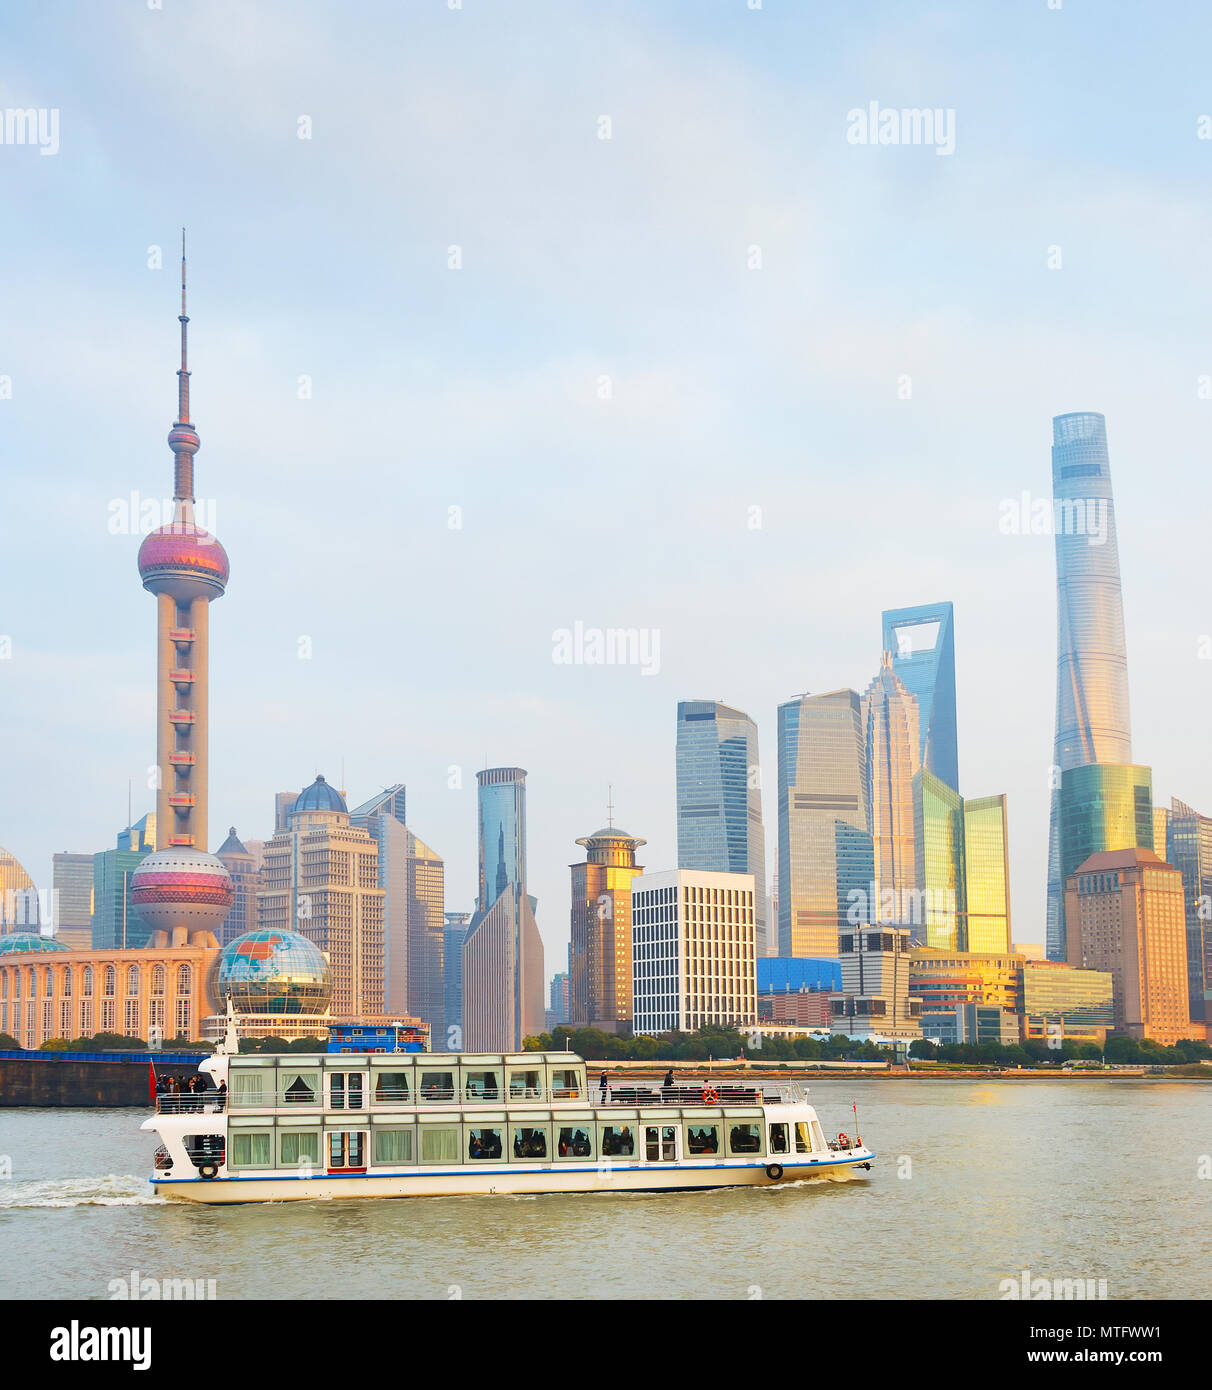 Les passagers bateau sur une rivière en face de centre-ville de Shanghai. Chine Banque D'Images